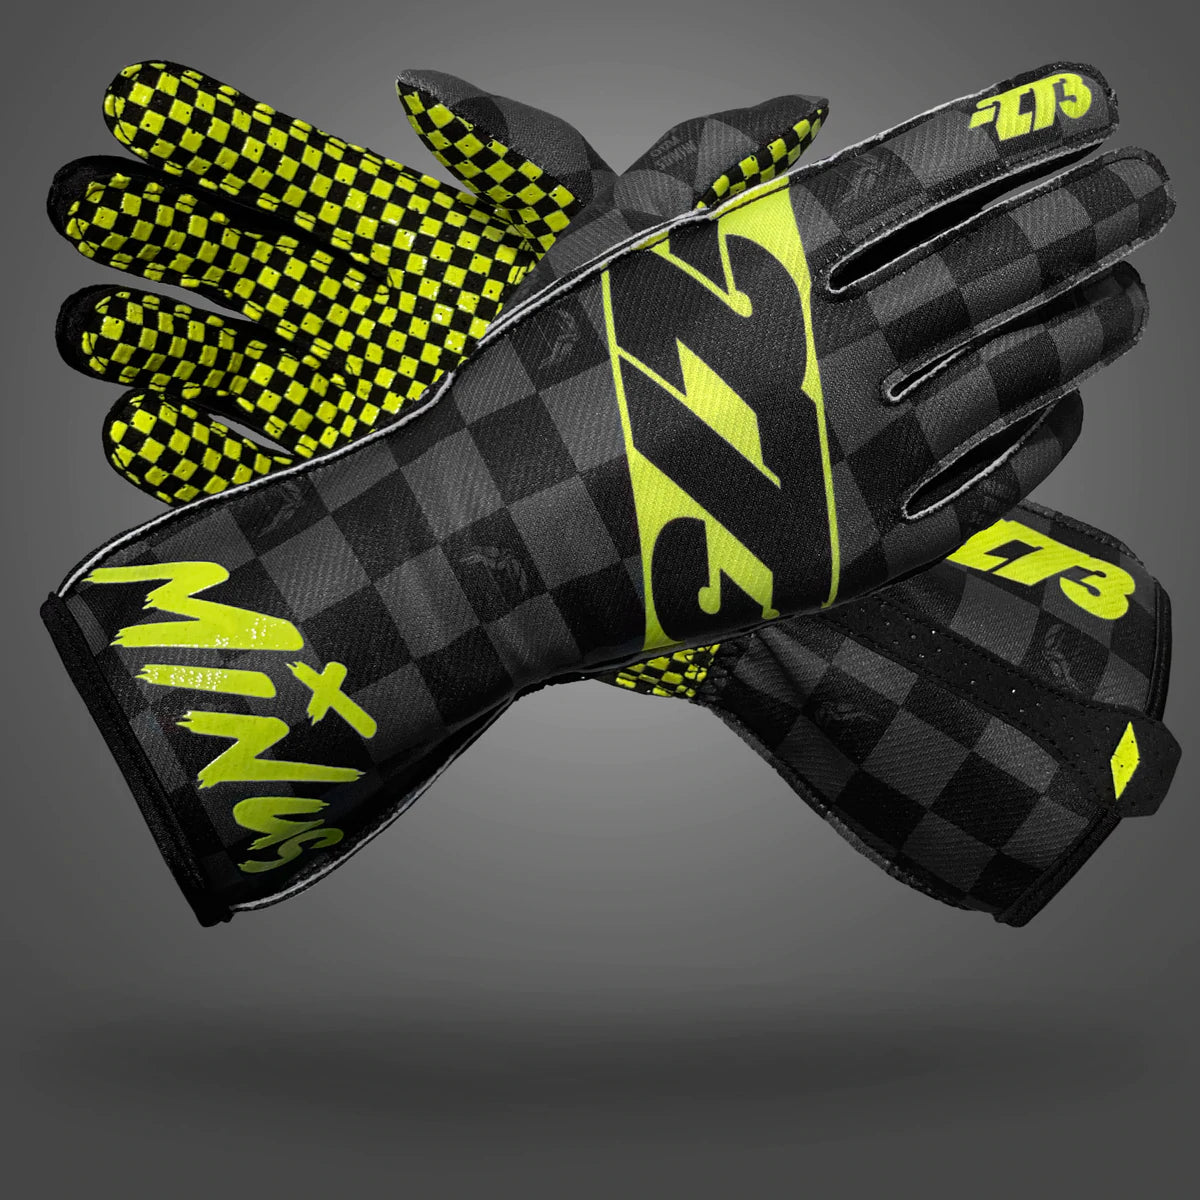 -273 Crenshaw Glove Yellow Black - Large